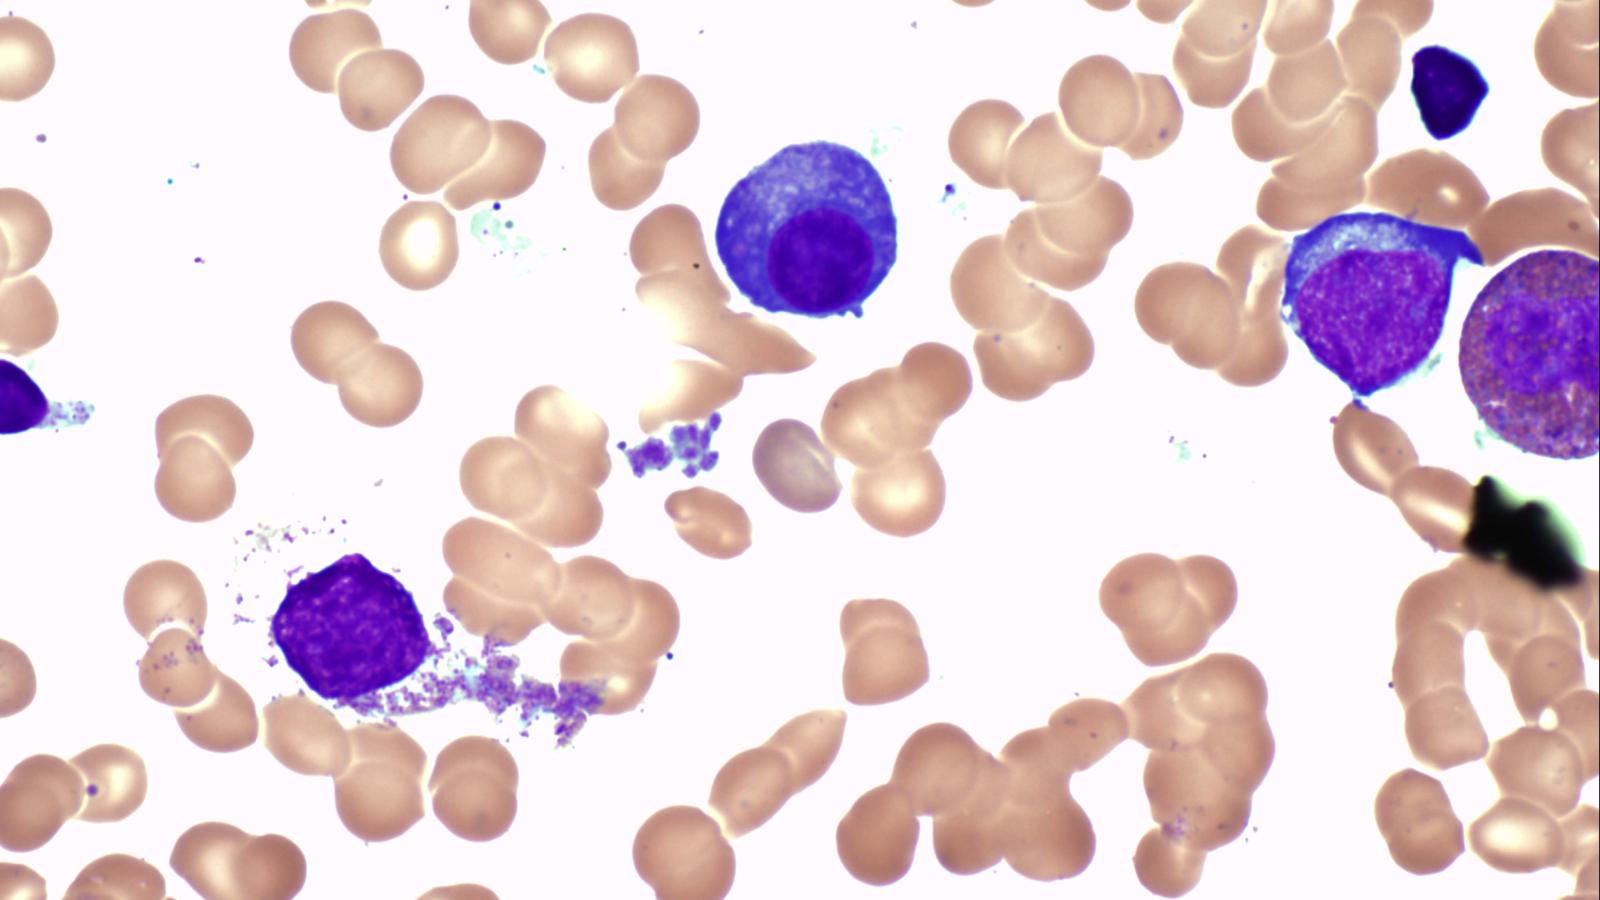 Blood cells cancer